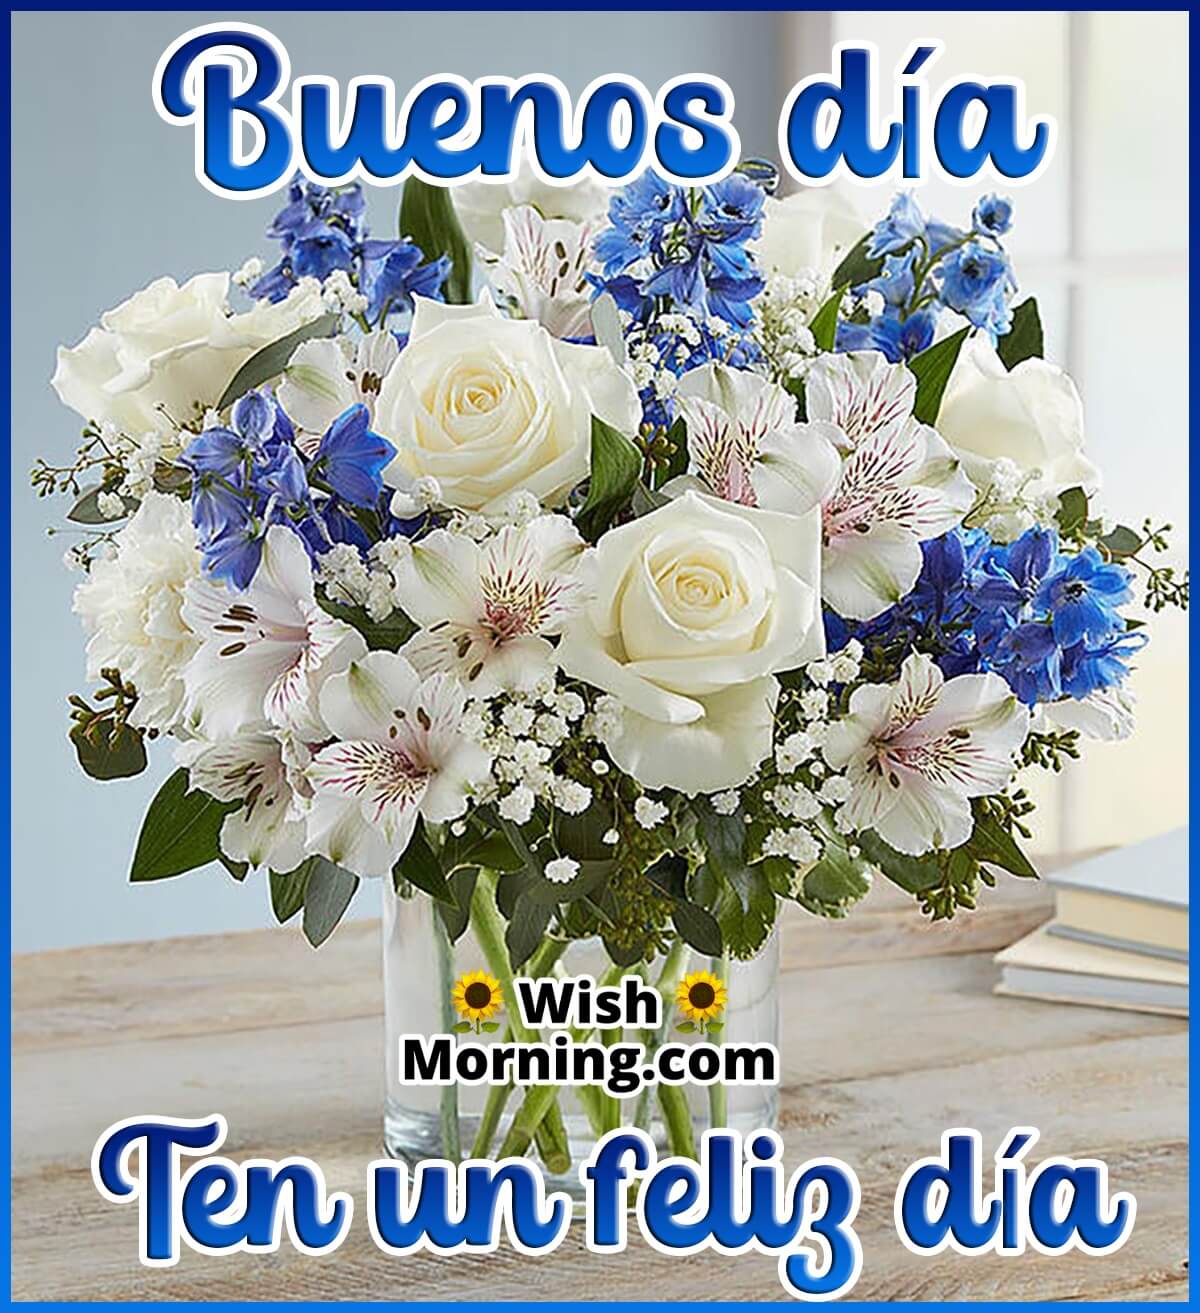 Good Morning Wish In Spanish